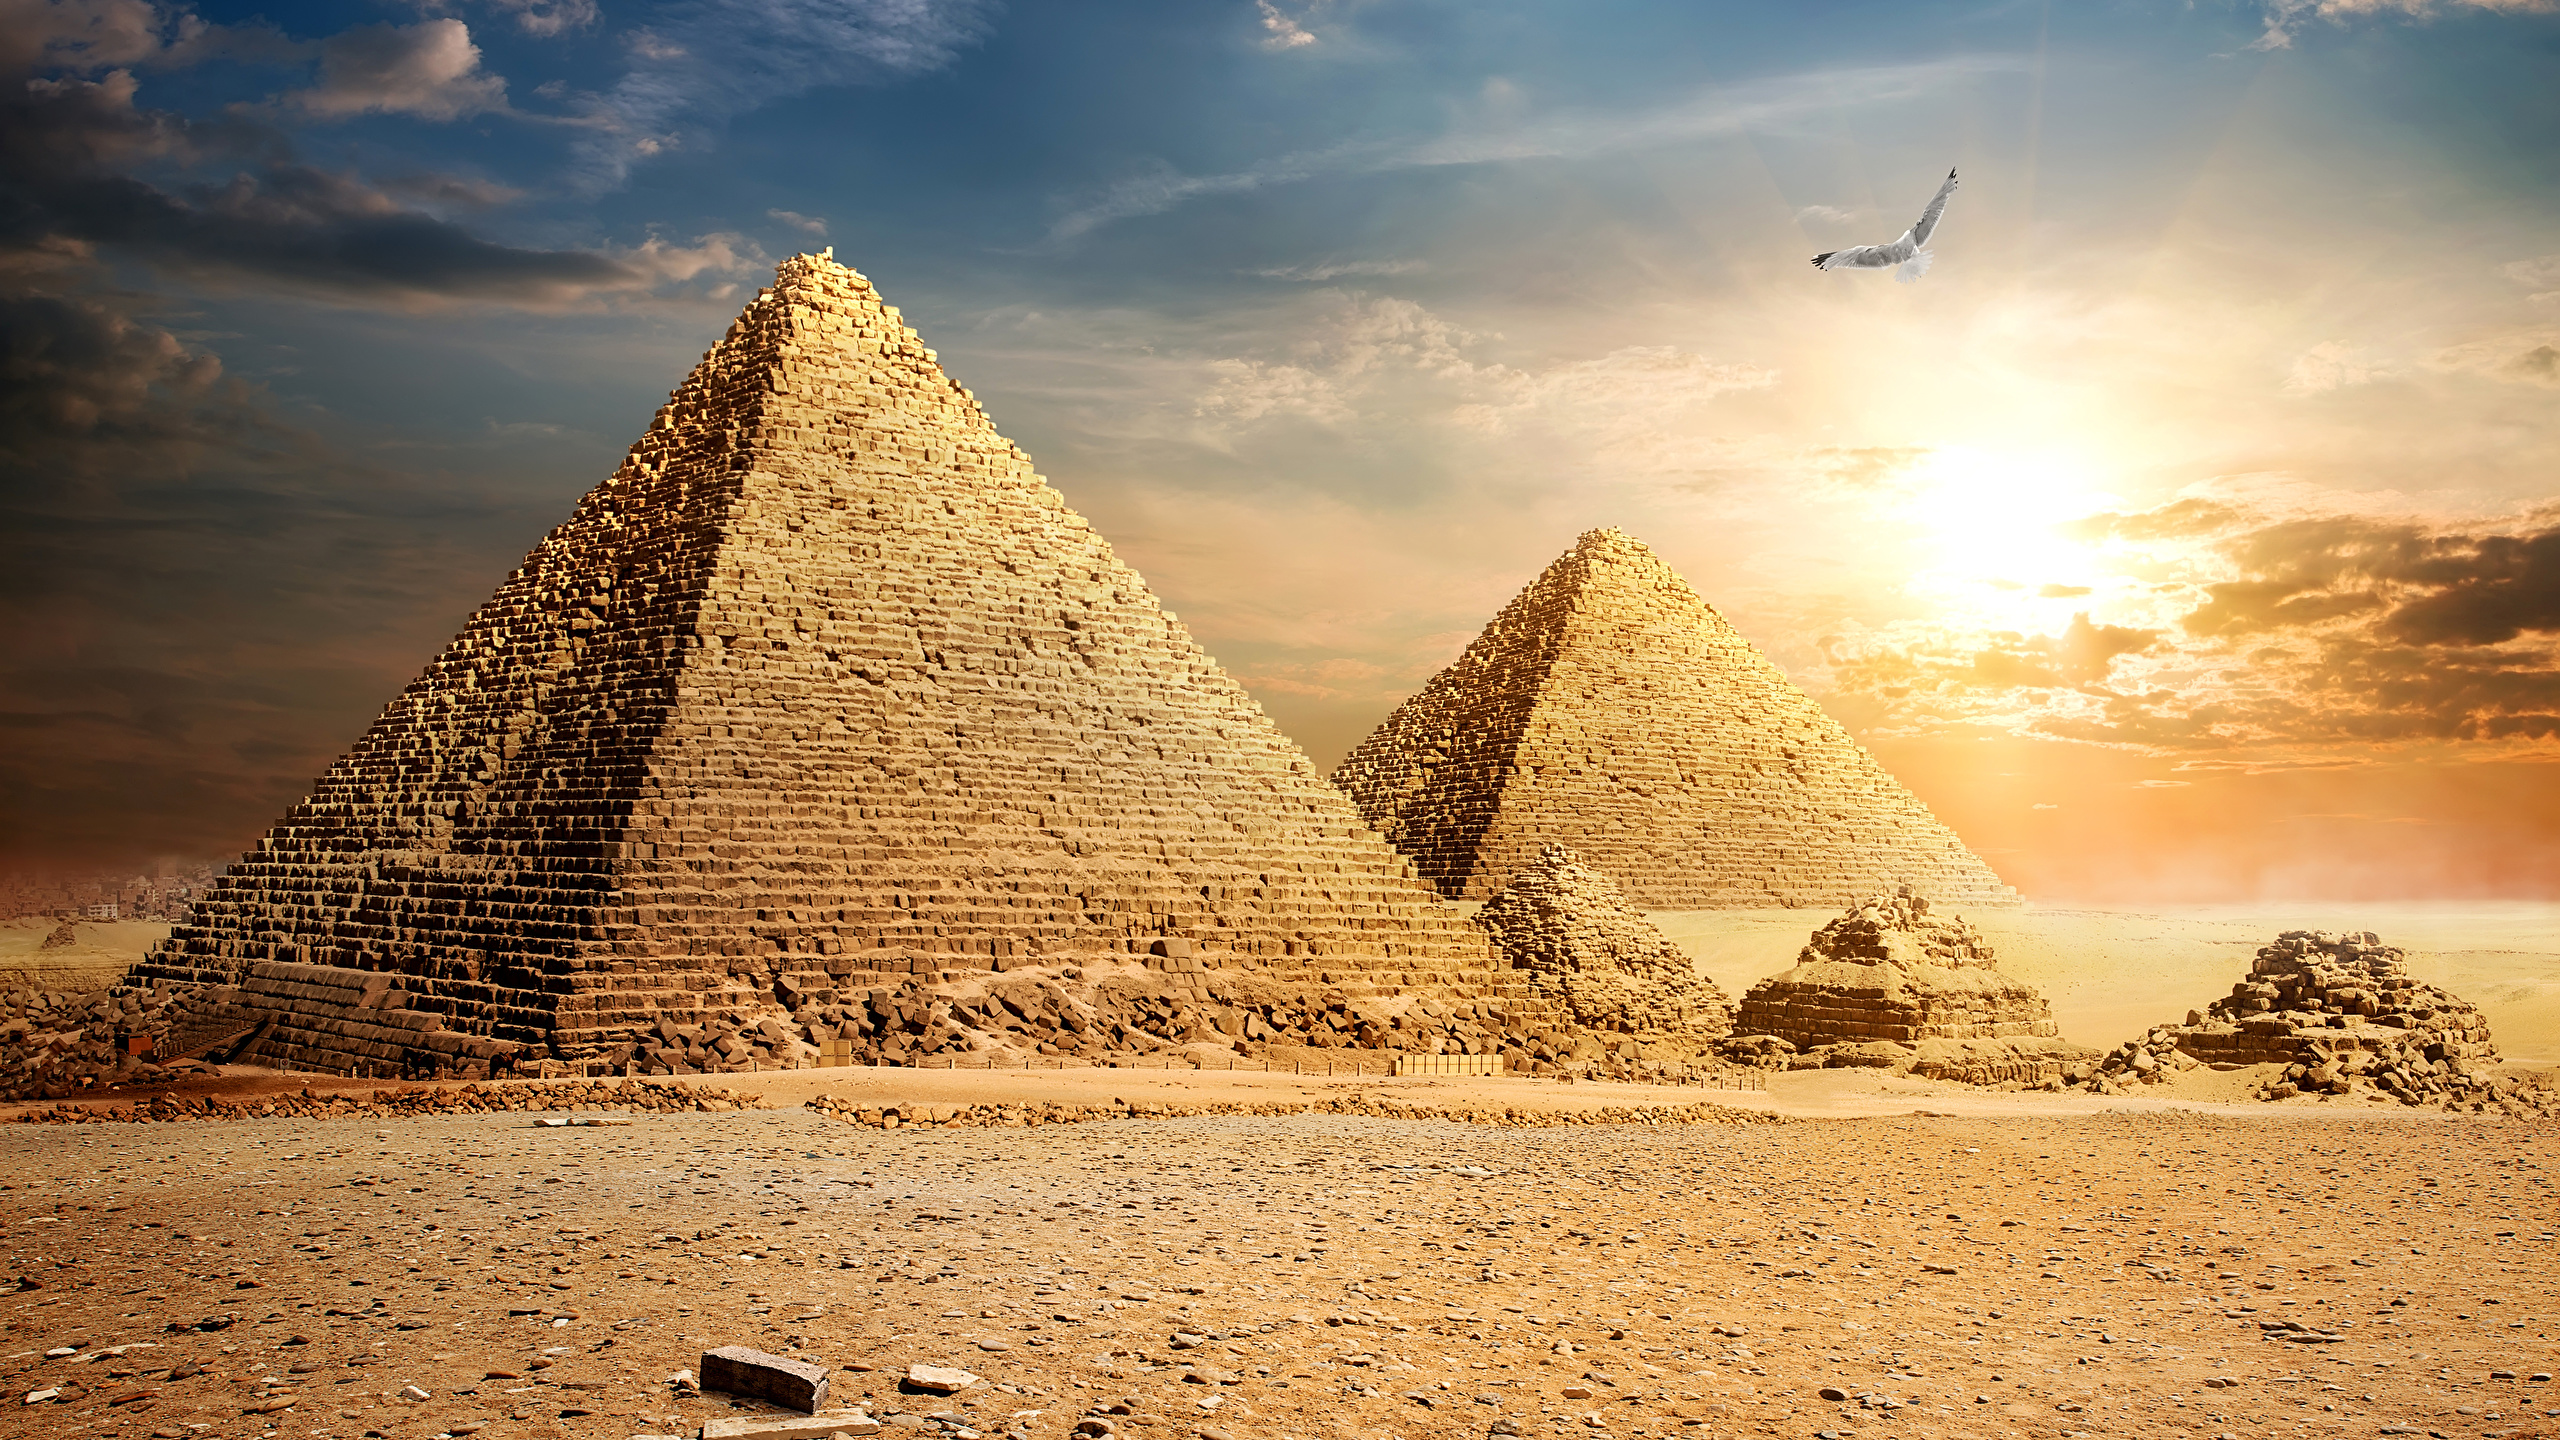 壁紙 2560x1440 エジプト 砂漠 空 Cairo ピラミッド 雲 自然 ダウンロード 写真